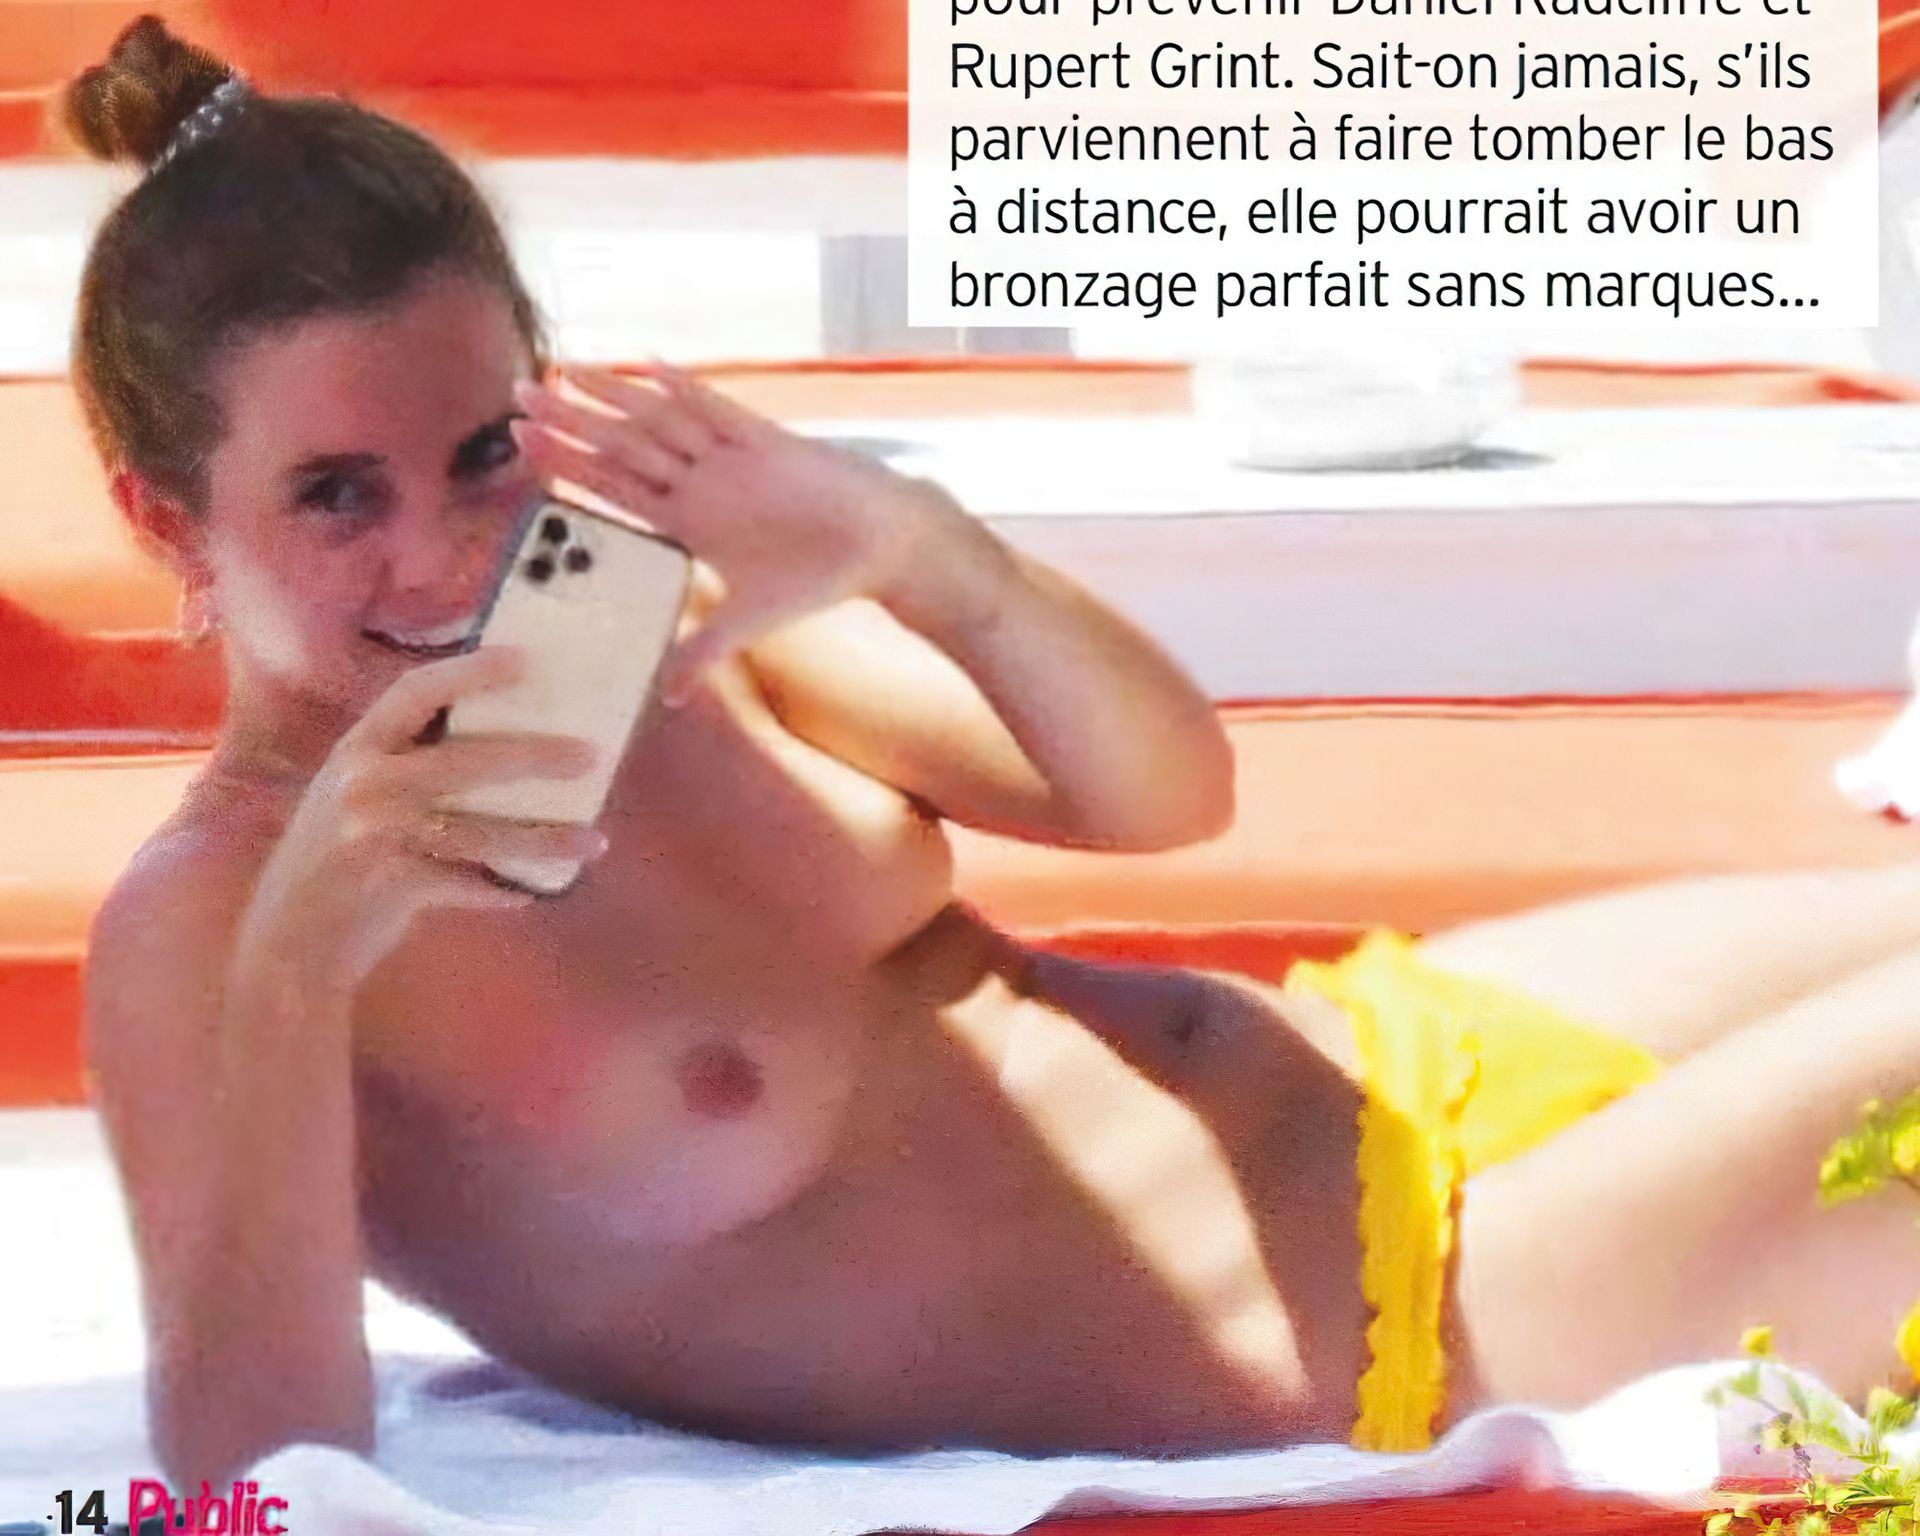 emma watson topless nude sunbathing fappenings.com 1